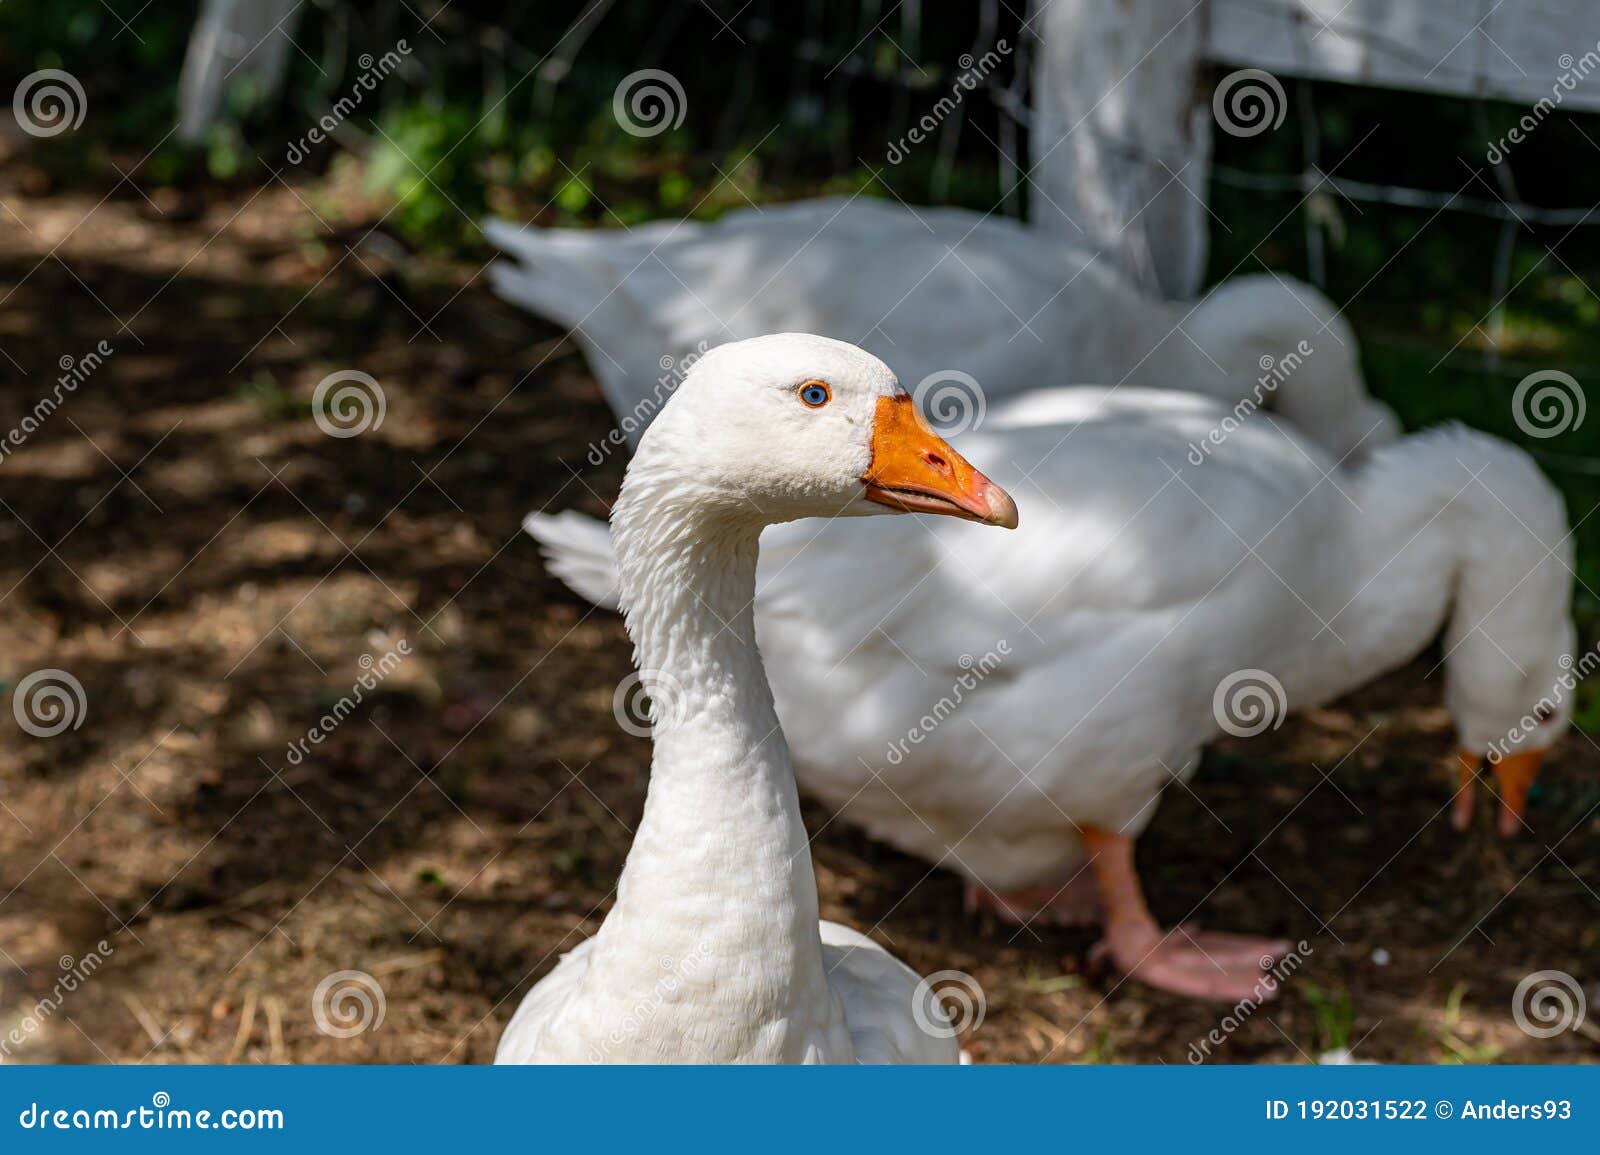 white emden geese